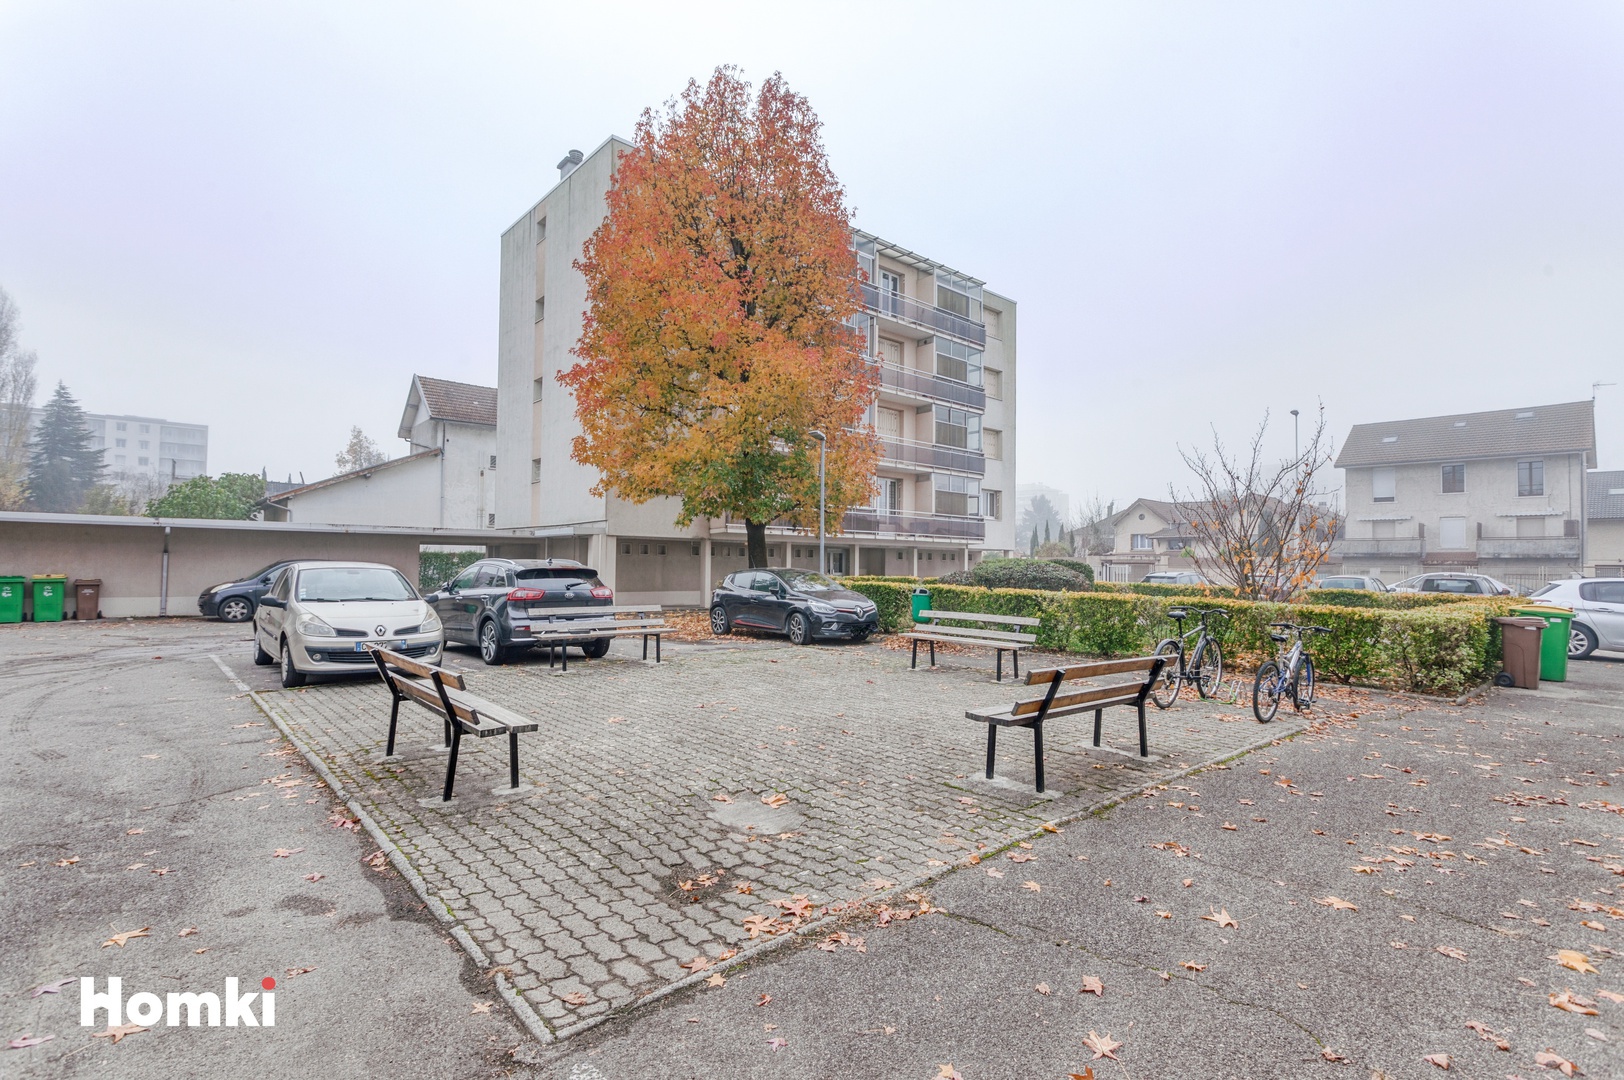 Homki - Vente Appartement  de 83.0 m² à Saint-Martin-d'Hères 38400